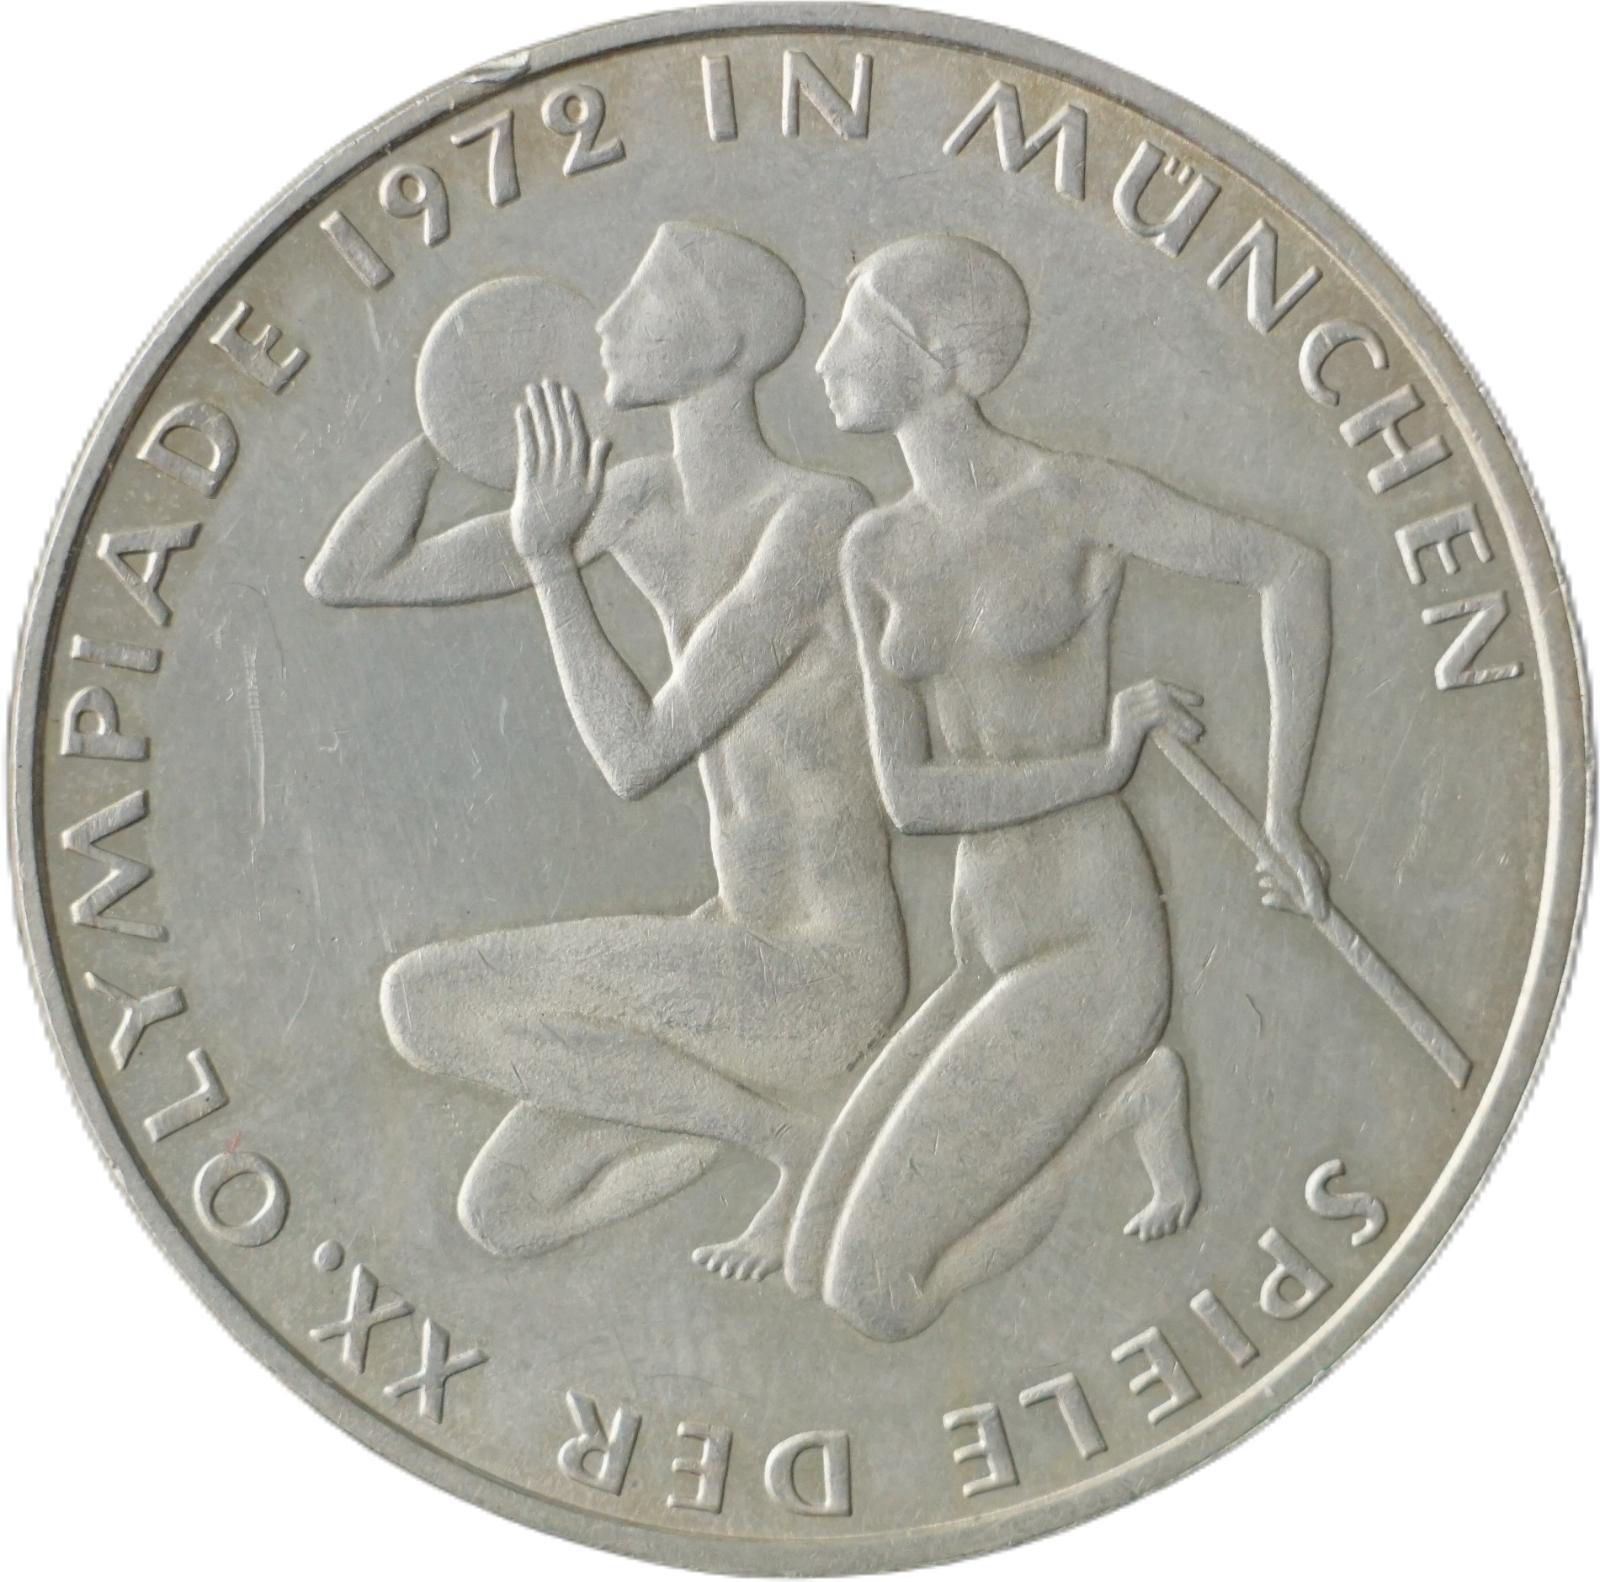 Nemecko - 10 Marka 1972 G - XX. letné olympijské hry, Mníchov 1972 !!! - Numizmatika